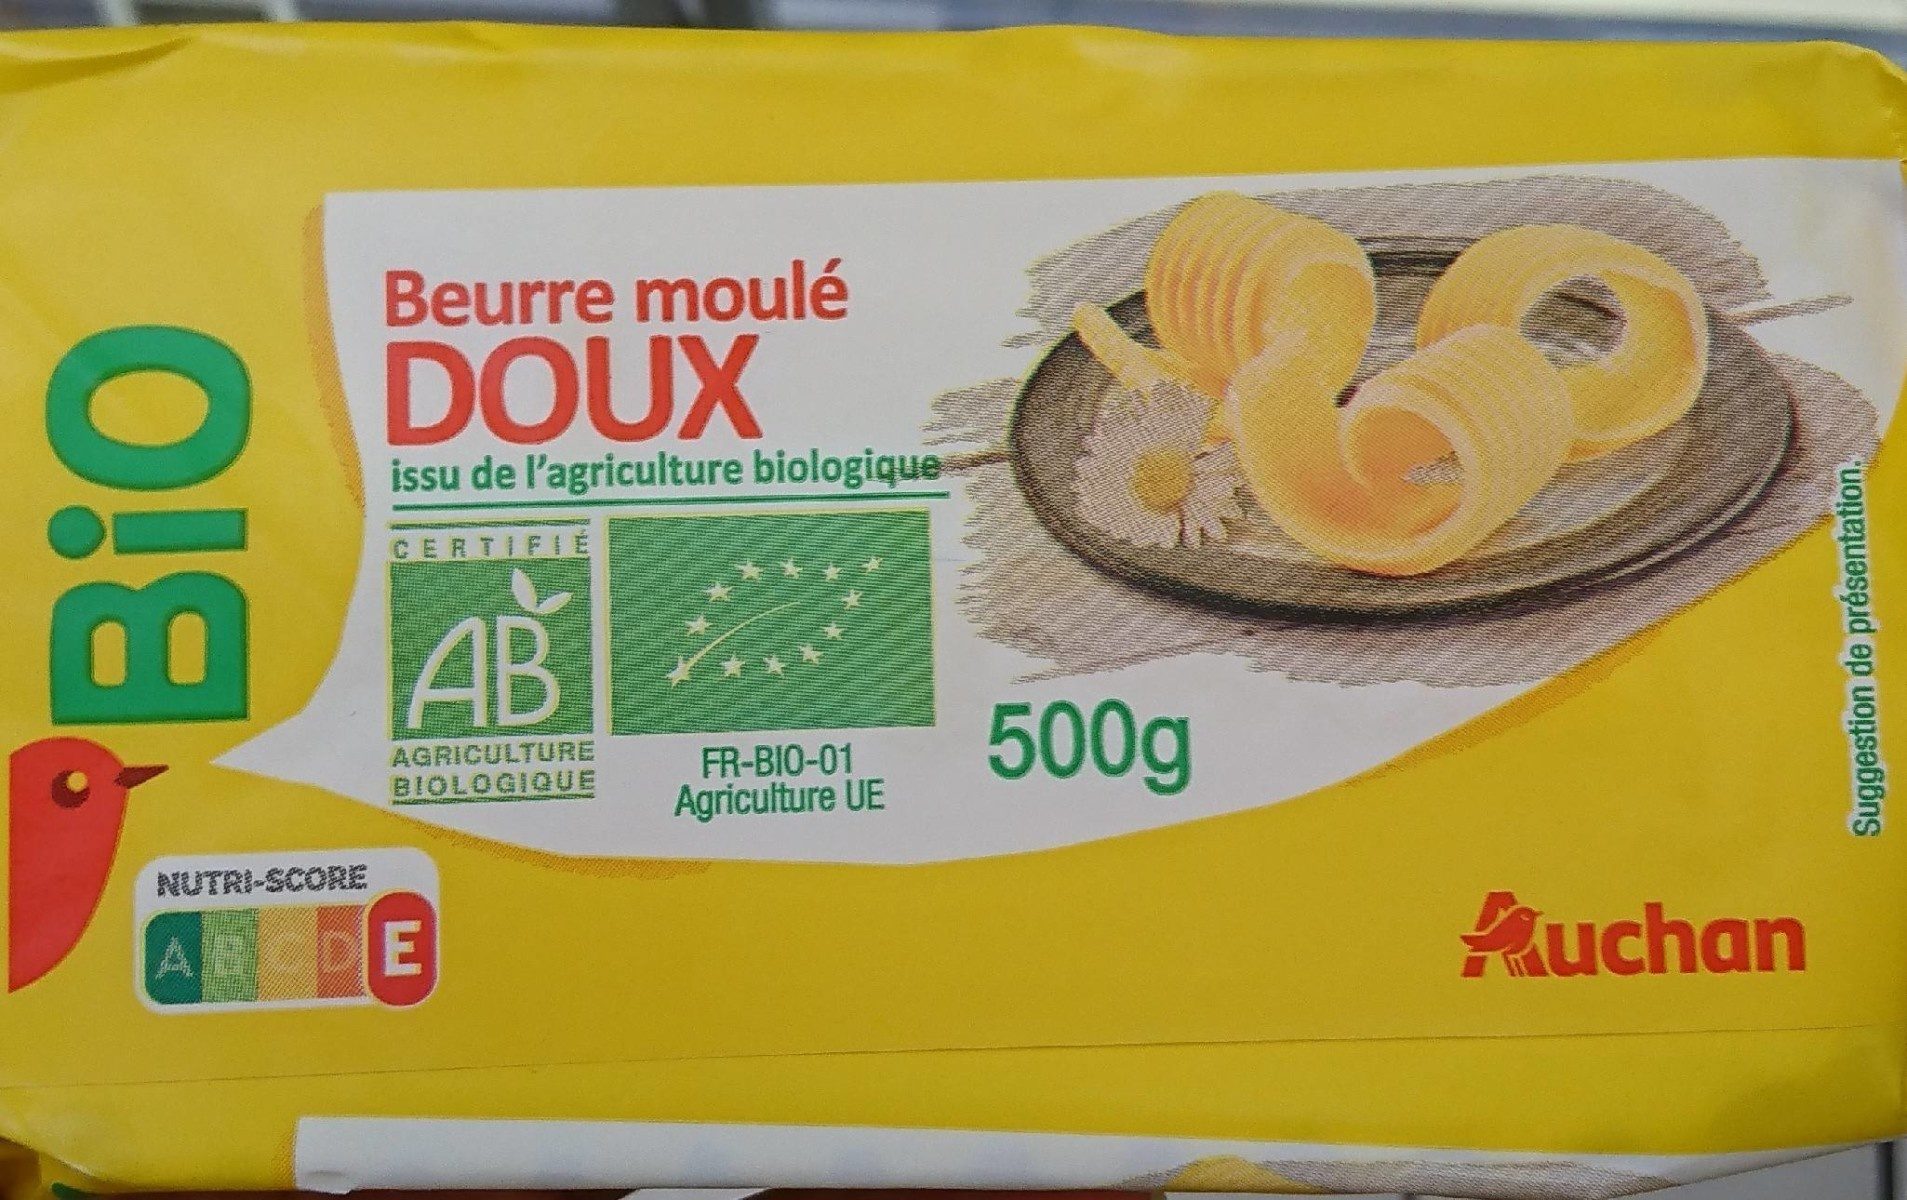 BIOBeurre moulé DOUX - Product